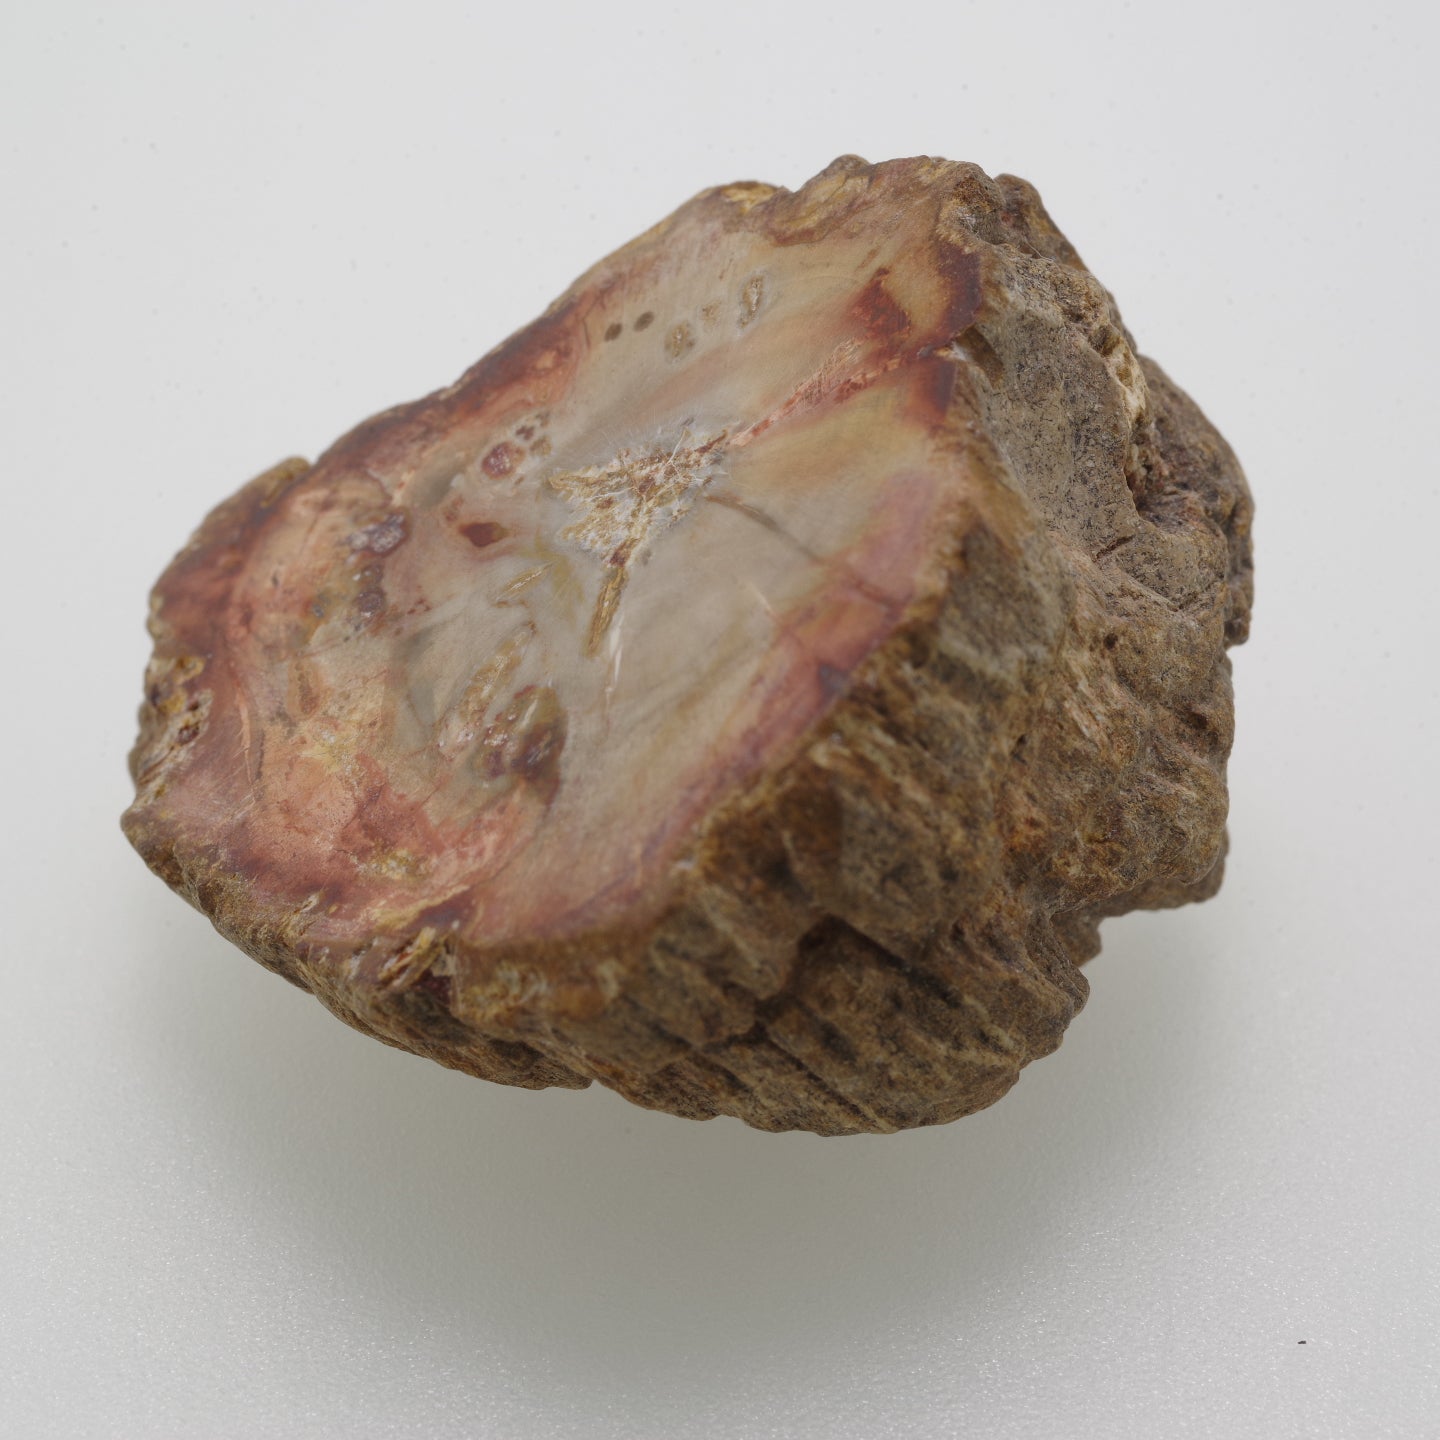 ペトリファイウッド 珪化木1 木化石 マダガスカル産  Petrifiedwood Madagascar 写真現物 動画あり